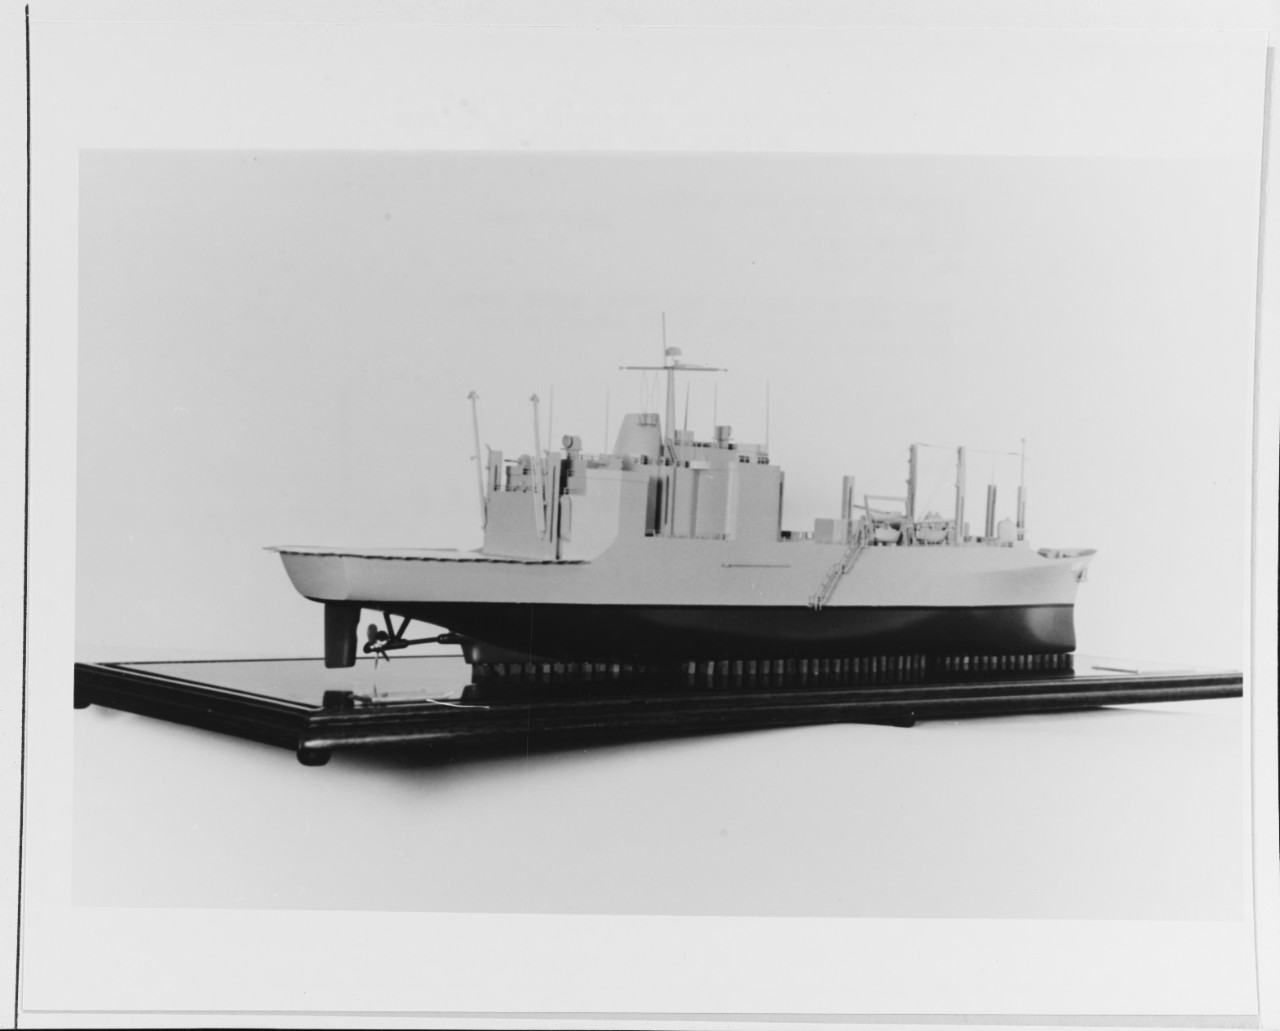 USS KILAUEA (AE-26)